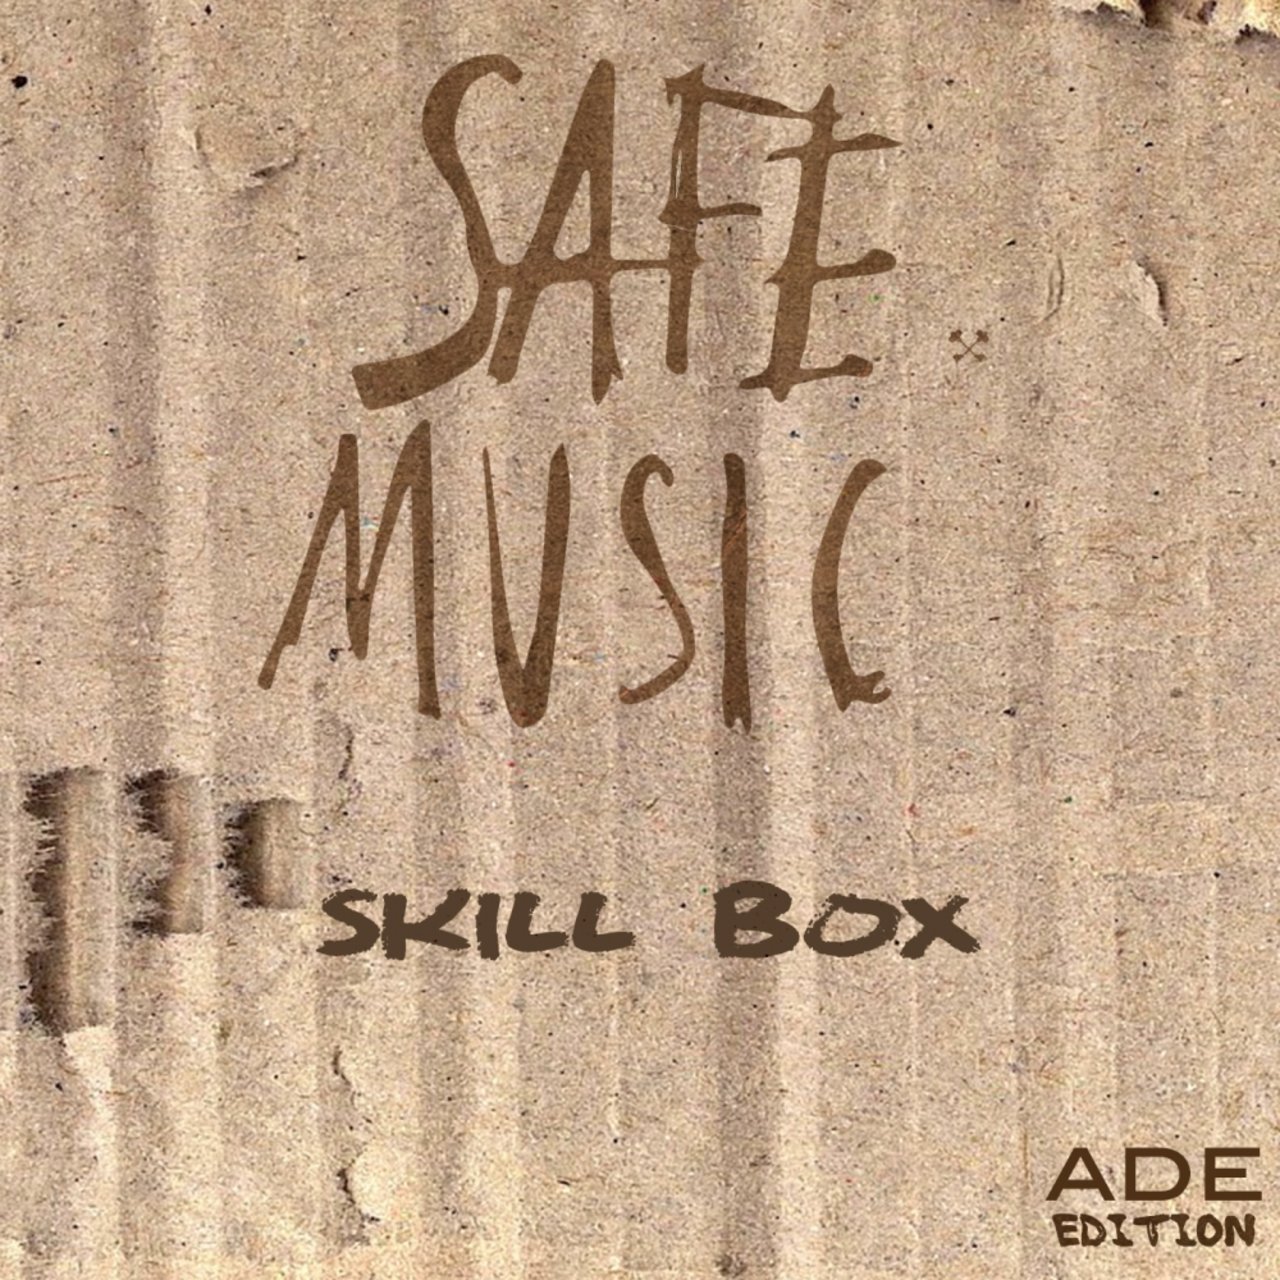 VA - Skill Box, Vol. 13 (ADE Edition) / Safe Music